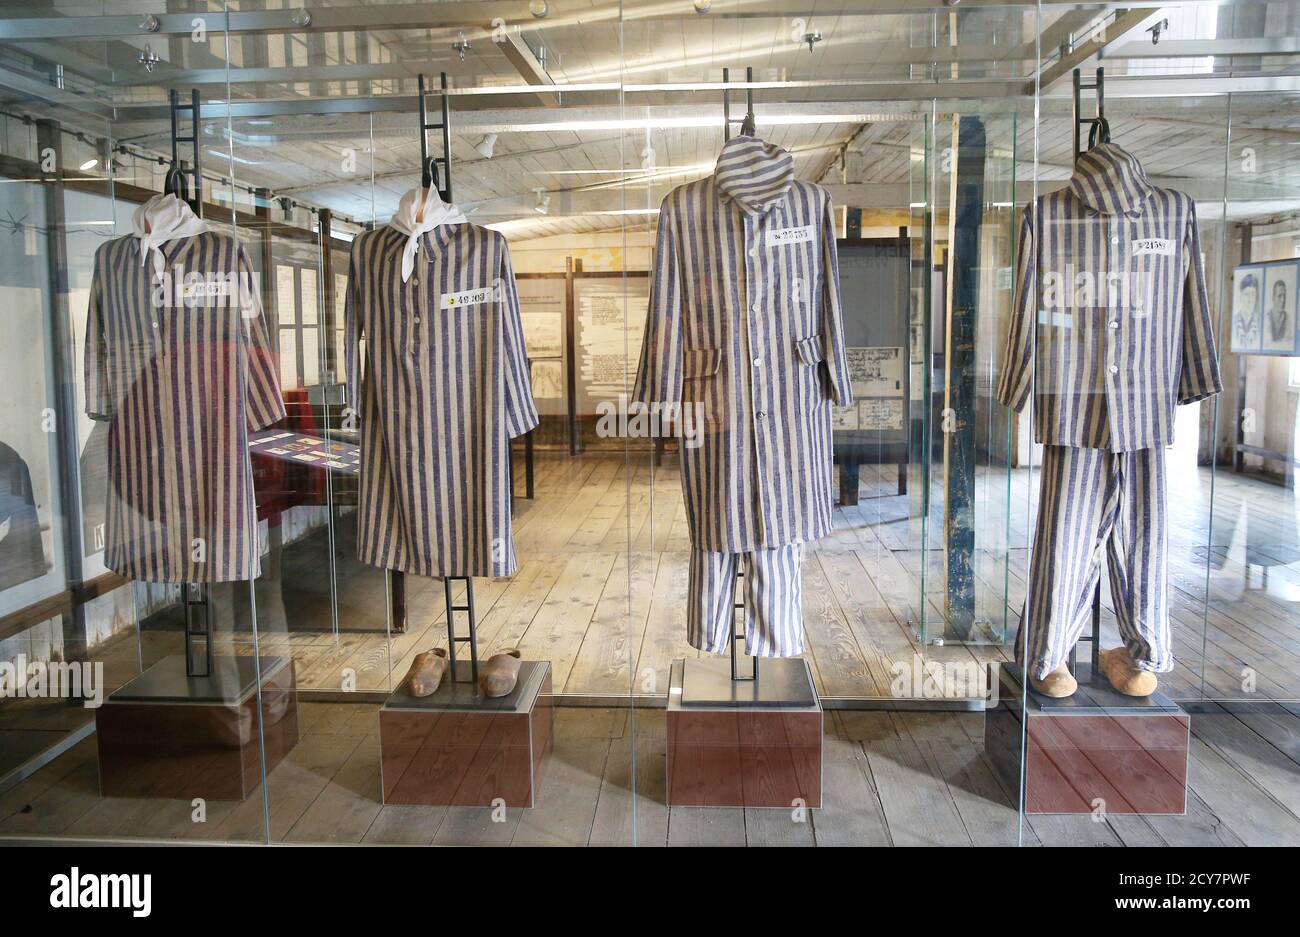 Vestiti Dei Prigionieri Immagini e Fotos Stock - Alamy